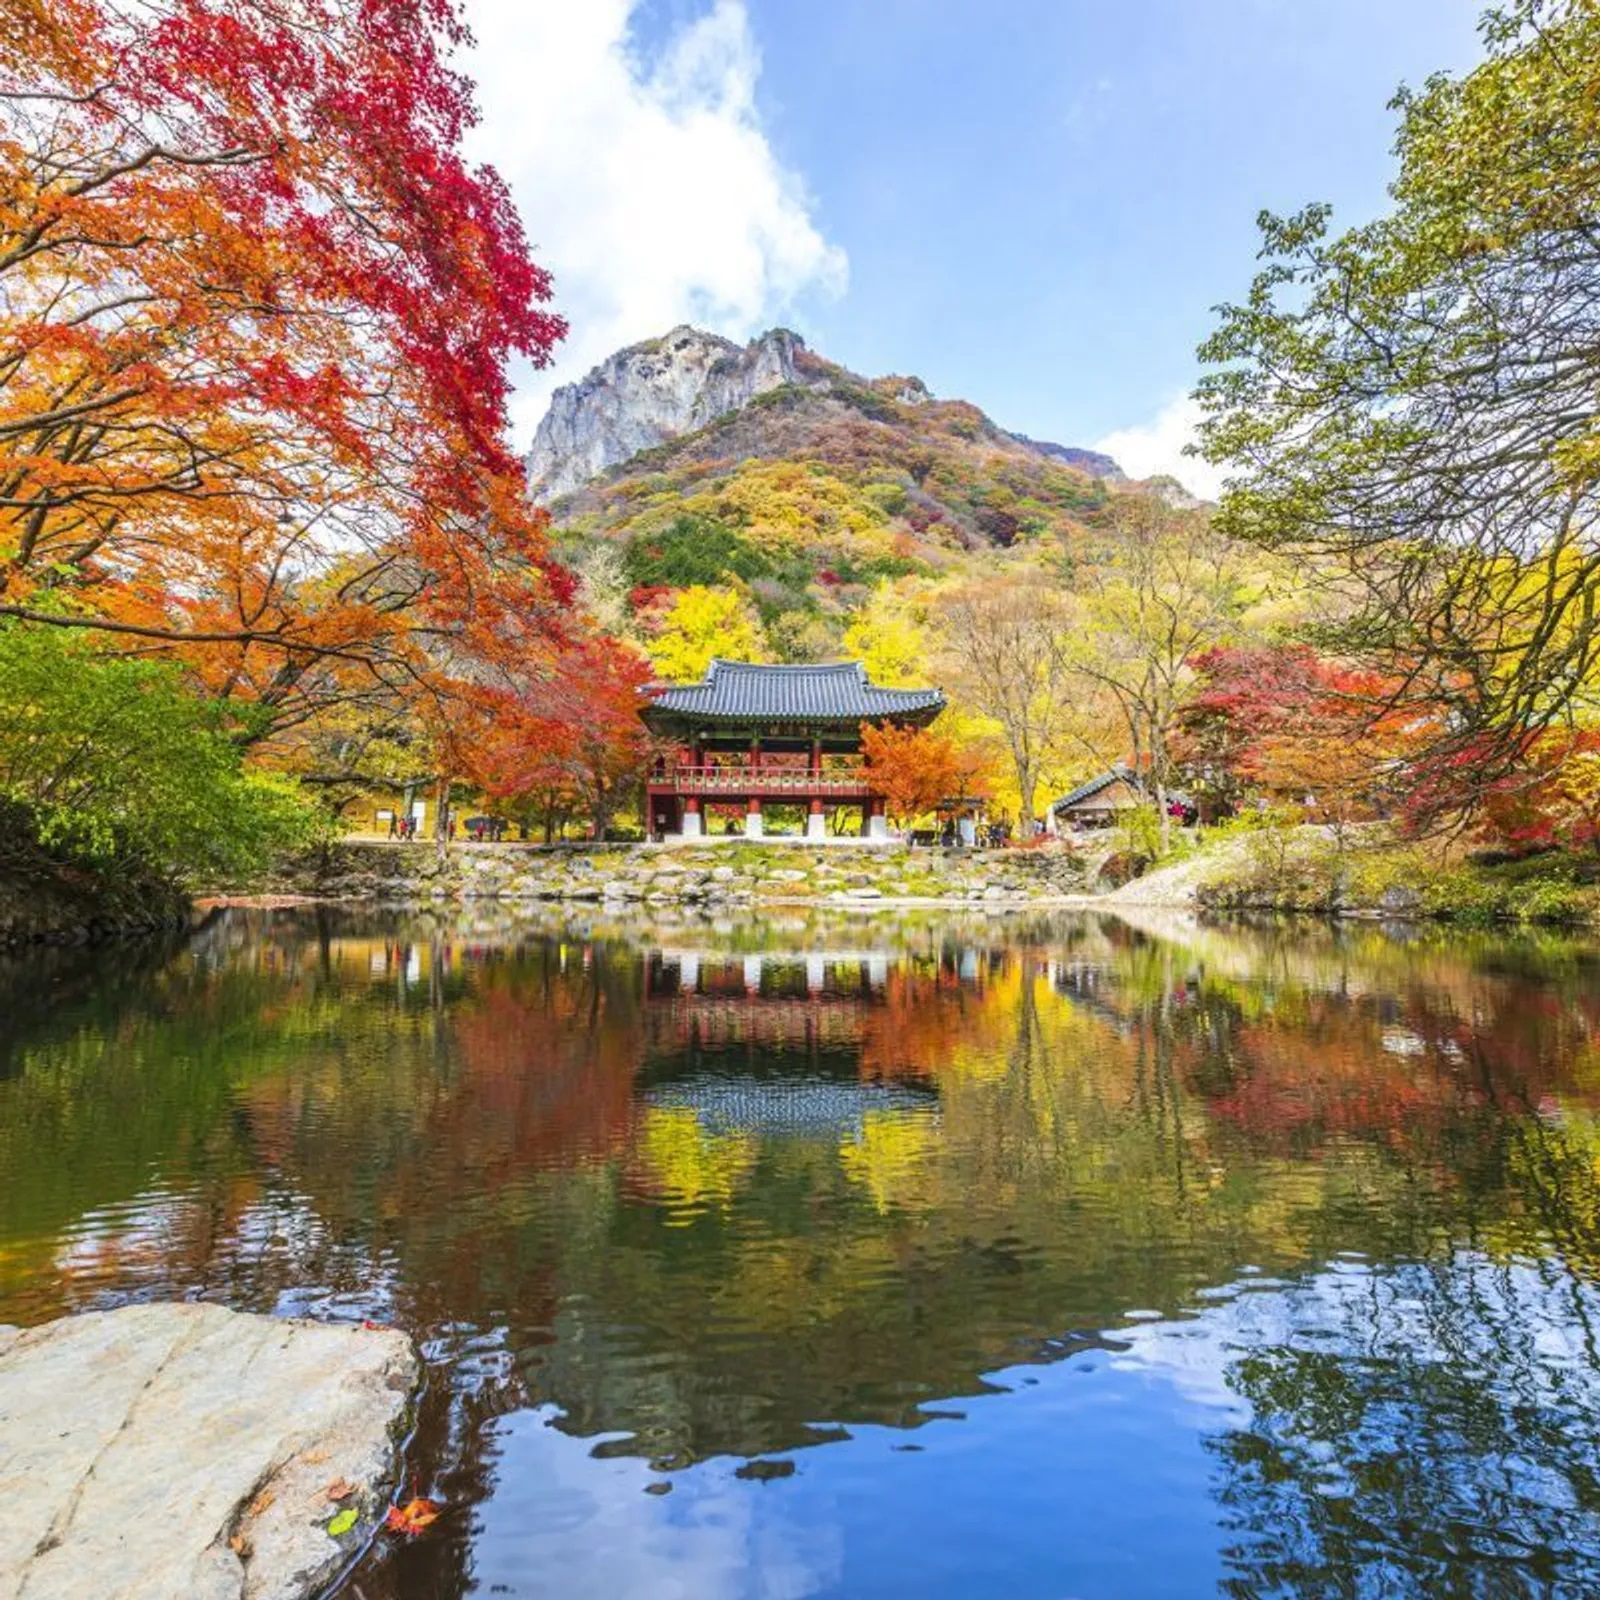 Các ngôi chùa ở Hàn Quốc mang đến những nơi nghỉ dưỡng thanh bình với di sản văn hóa phong phú. Những địa điểm cổ xưa này, nép mình trong những khu rừng tươi tốt, trên núi hay gần những dòng suối yên tĩnh, không chỉ là nơi thờ cúng; chúng đại diện cho bản chất lịch sử của đất nước, với nhiều tác phẩm có niên đại từ Triều đại Goryeo và Joseon. Kiến trúc của họ, đặc trưng bởi màu sắc rực rỡ và đồ gỗ phức tạp, hòa quyện hài hòa với thiên nhiên.  Những ngôi chùa này ở Hàn Quốc cũng là những trung tâm văn hóa sôi động, tổ chức nhiều lễ hội và sự kiện trong suốt cả năm. Đóng vai trò là cửa ngõ cho cả khách du lịch quốc tế và người dân địa phương, những ngôi chùa này ở Hàn Quốc mang đến những trải nghiệm độc đáo như ở lại chùa, cho phép du khách hòa mình vào đời sống tu viện Phật giáo và tham gia thiền định cũng như các nghi lễ truyền thống khác.